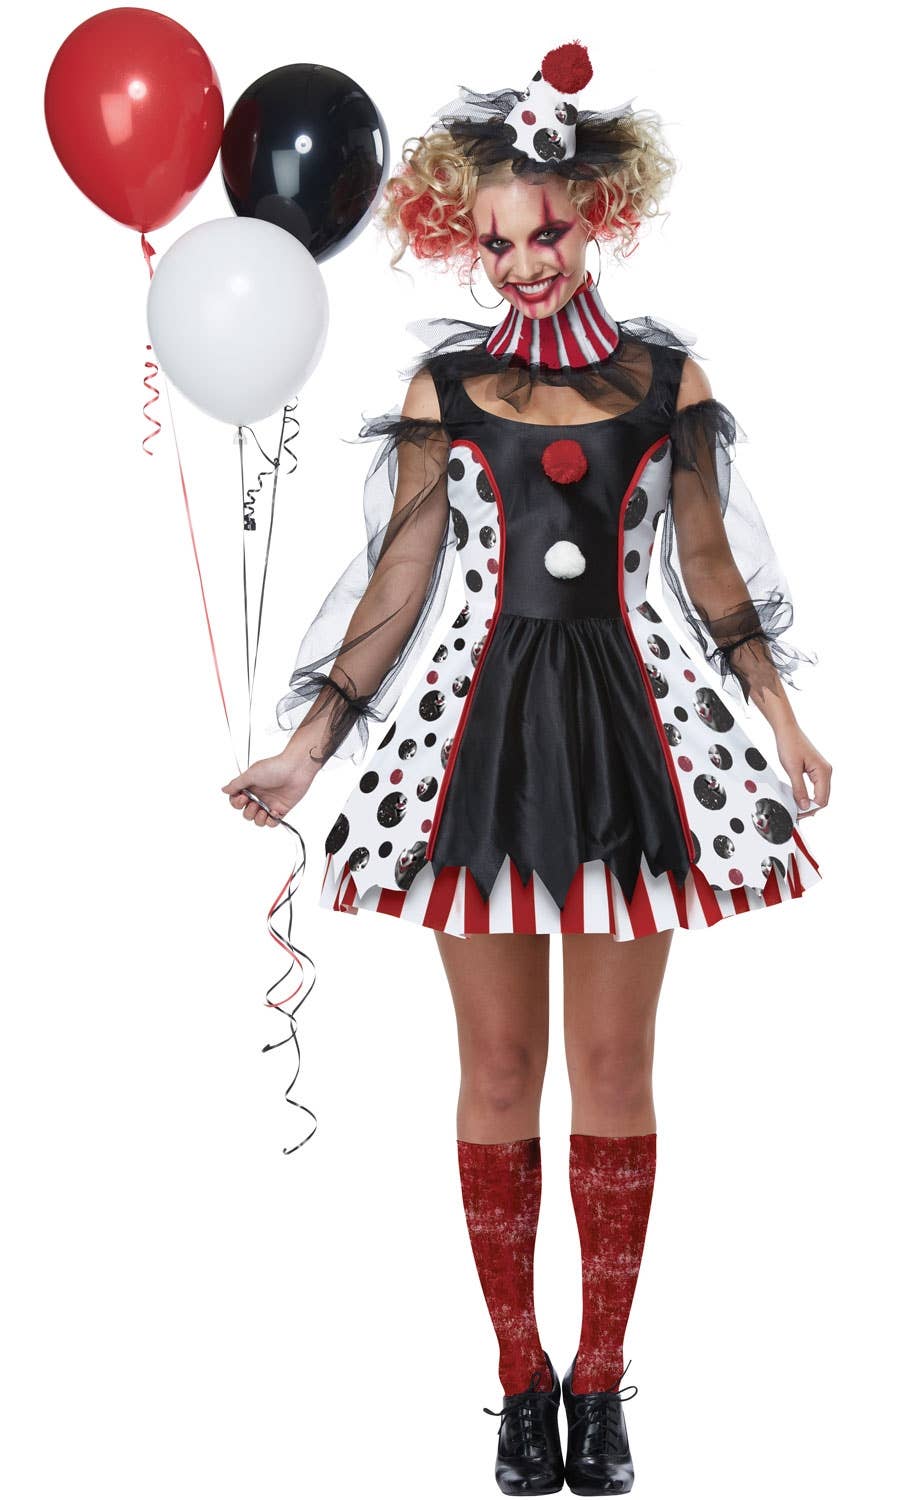 Twisted Women's Clown Evil Halloween Fancy Dress Costume Main Image